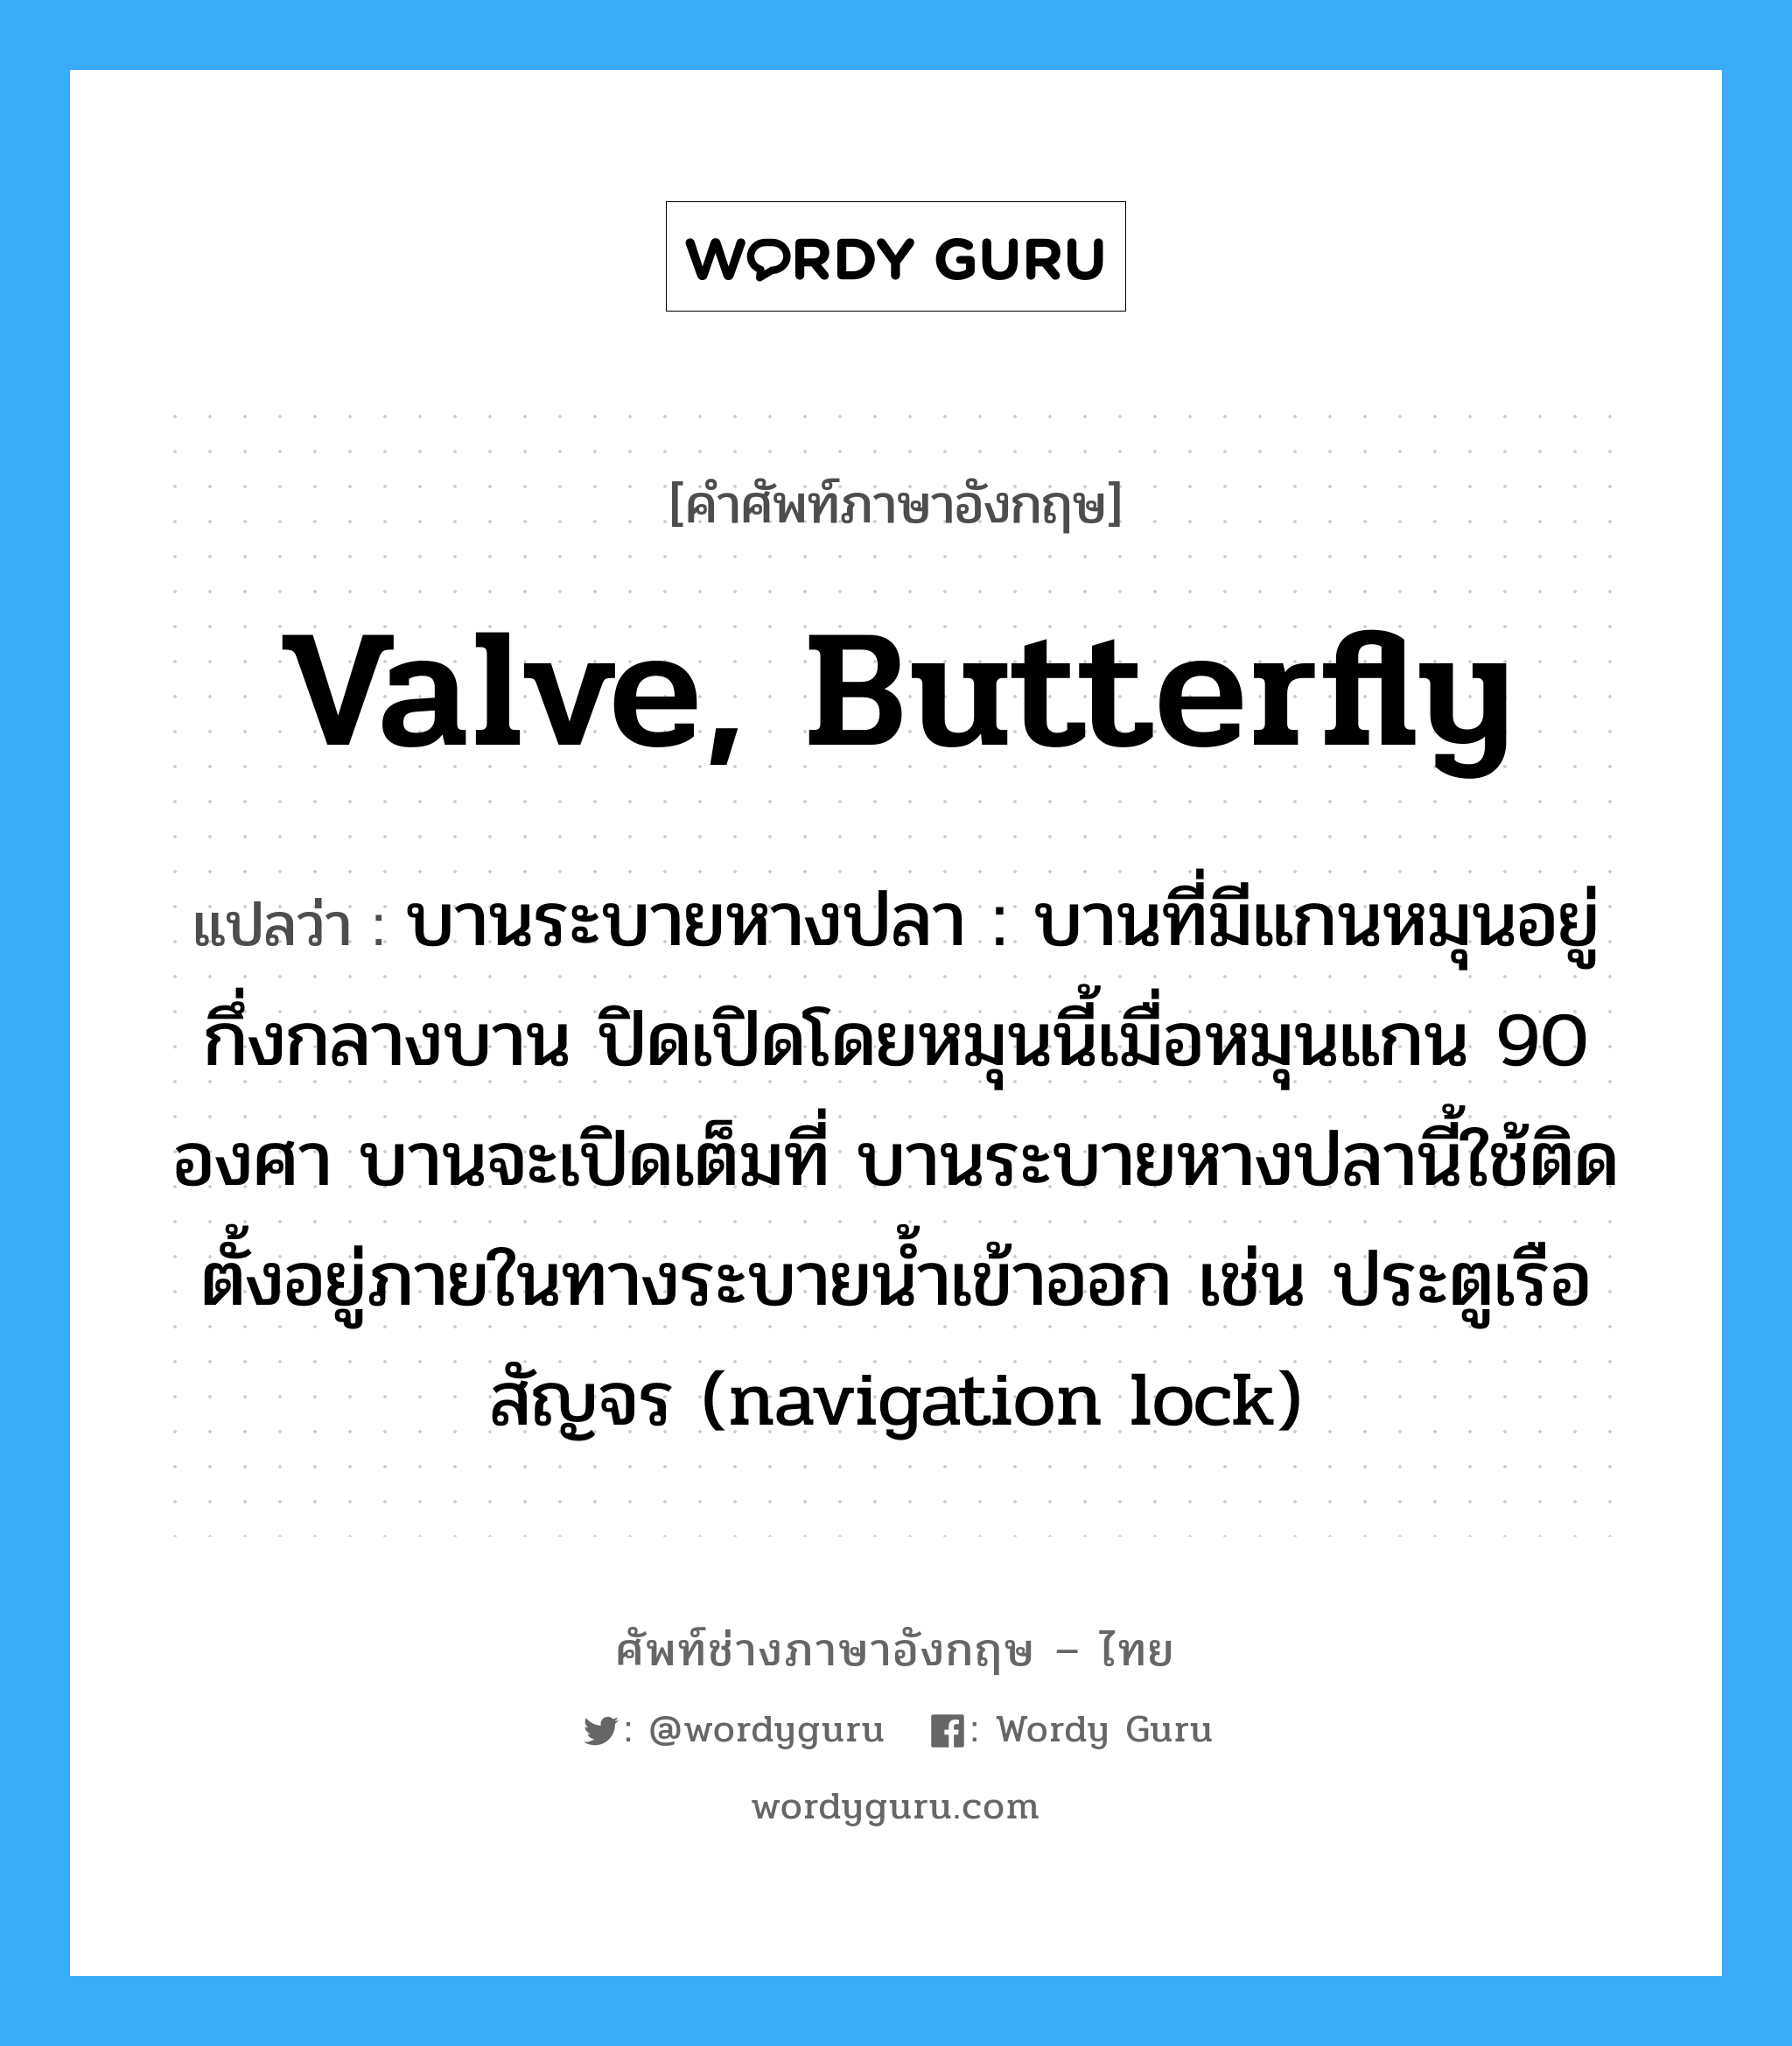 valve, butterfly แปลว่า?, คำศัพท์ช่างภาษาอังกฤษ - ไทย valve, butterfly คำศัพท์ภาษาอังกฤษ valve, butterfly แปลว่า บานระบายหางปลา : บานที่มีแกนหมุนอยู่กึ่งกลางบาน ปิดเปิดโดยหมุนนี้เมื่อหมุนแกน 90 องศา บานจะเปิดเต็มที่ บานระบายหางปลานี้ใช้ติดตั้งอยู่ภายในทางระบายน้ำเข้าออก เช่น ประตูเรือสัญจร (navigation lock)